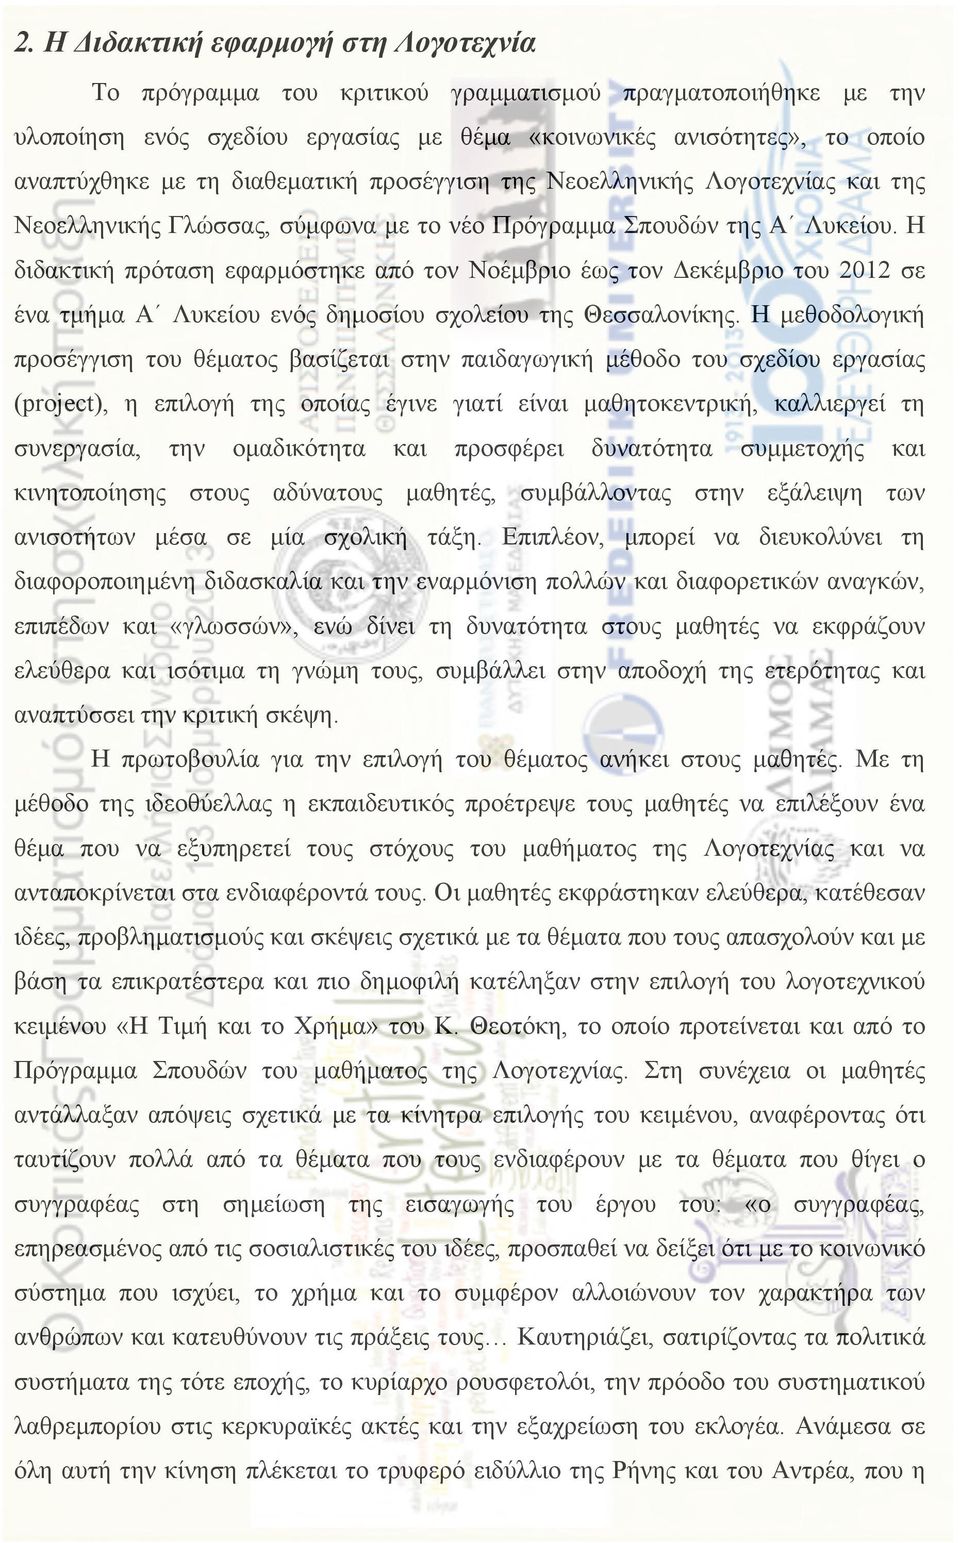 Η διδακτική πρόταση εφαρµόστηκε από τον Νοέµβριο έως τον Δεκέµβριο του 2012 σε ένα τµήµα Α Λυκείου ενός δηµοσίου σχολείου της Θεσσαλονίκης.